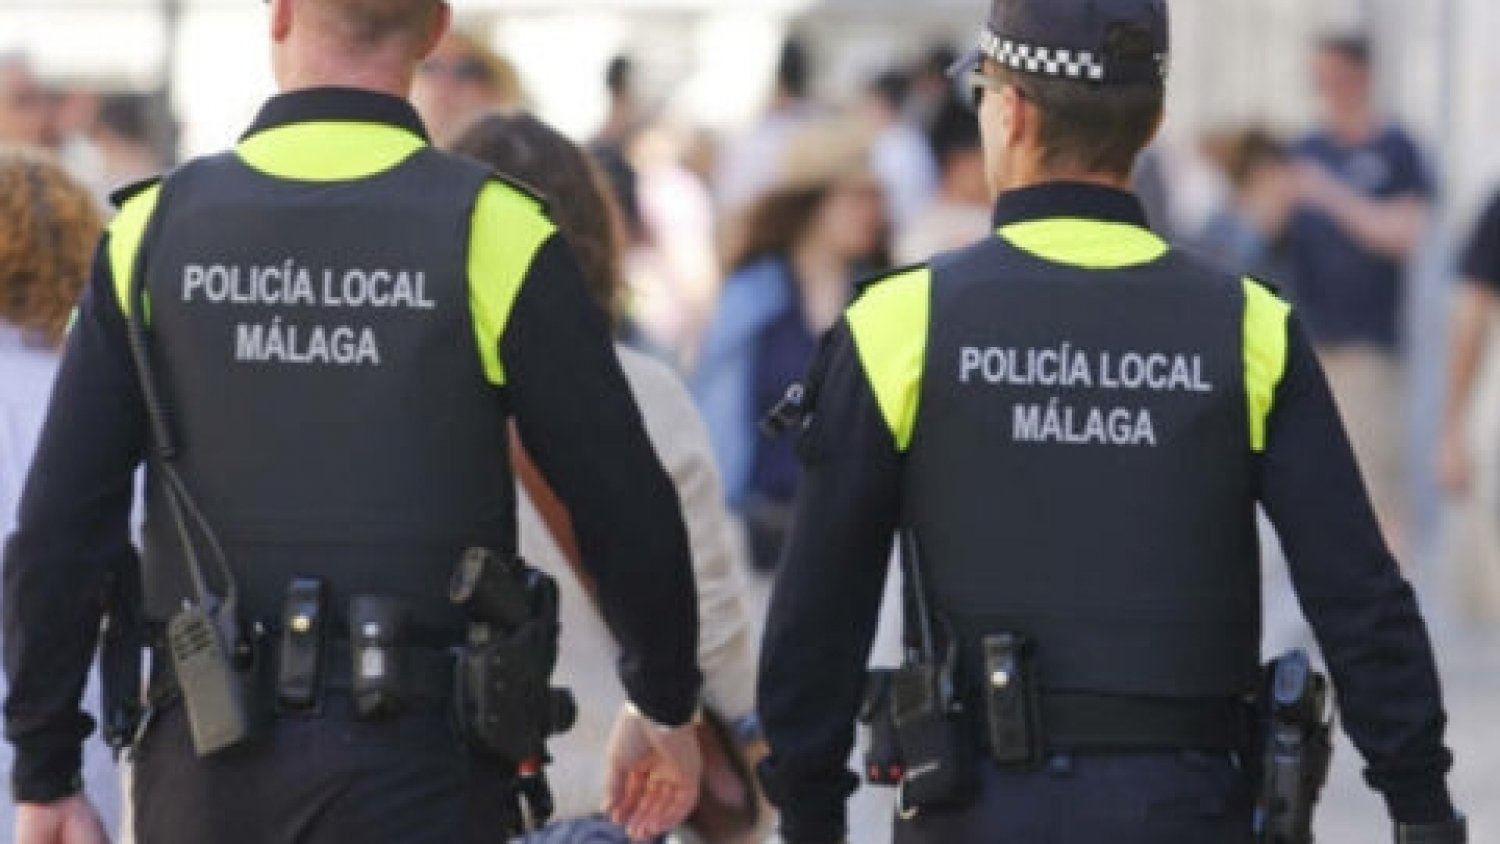 La Policía Local tramita 69 denuncias en materia de control ruidos y convivencia en la última semana